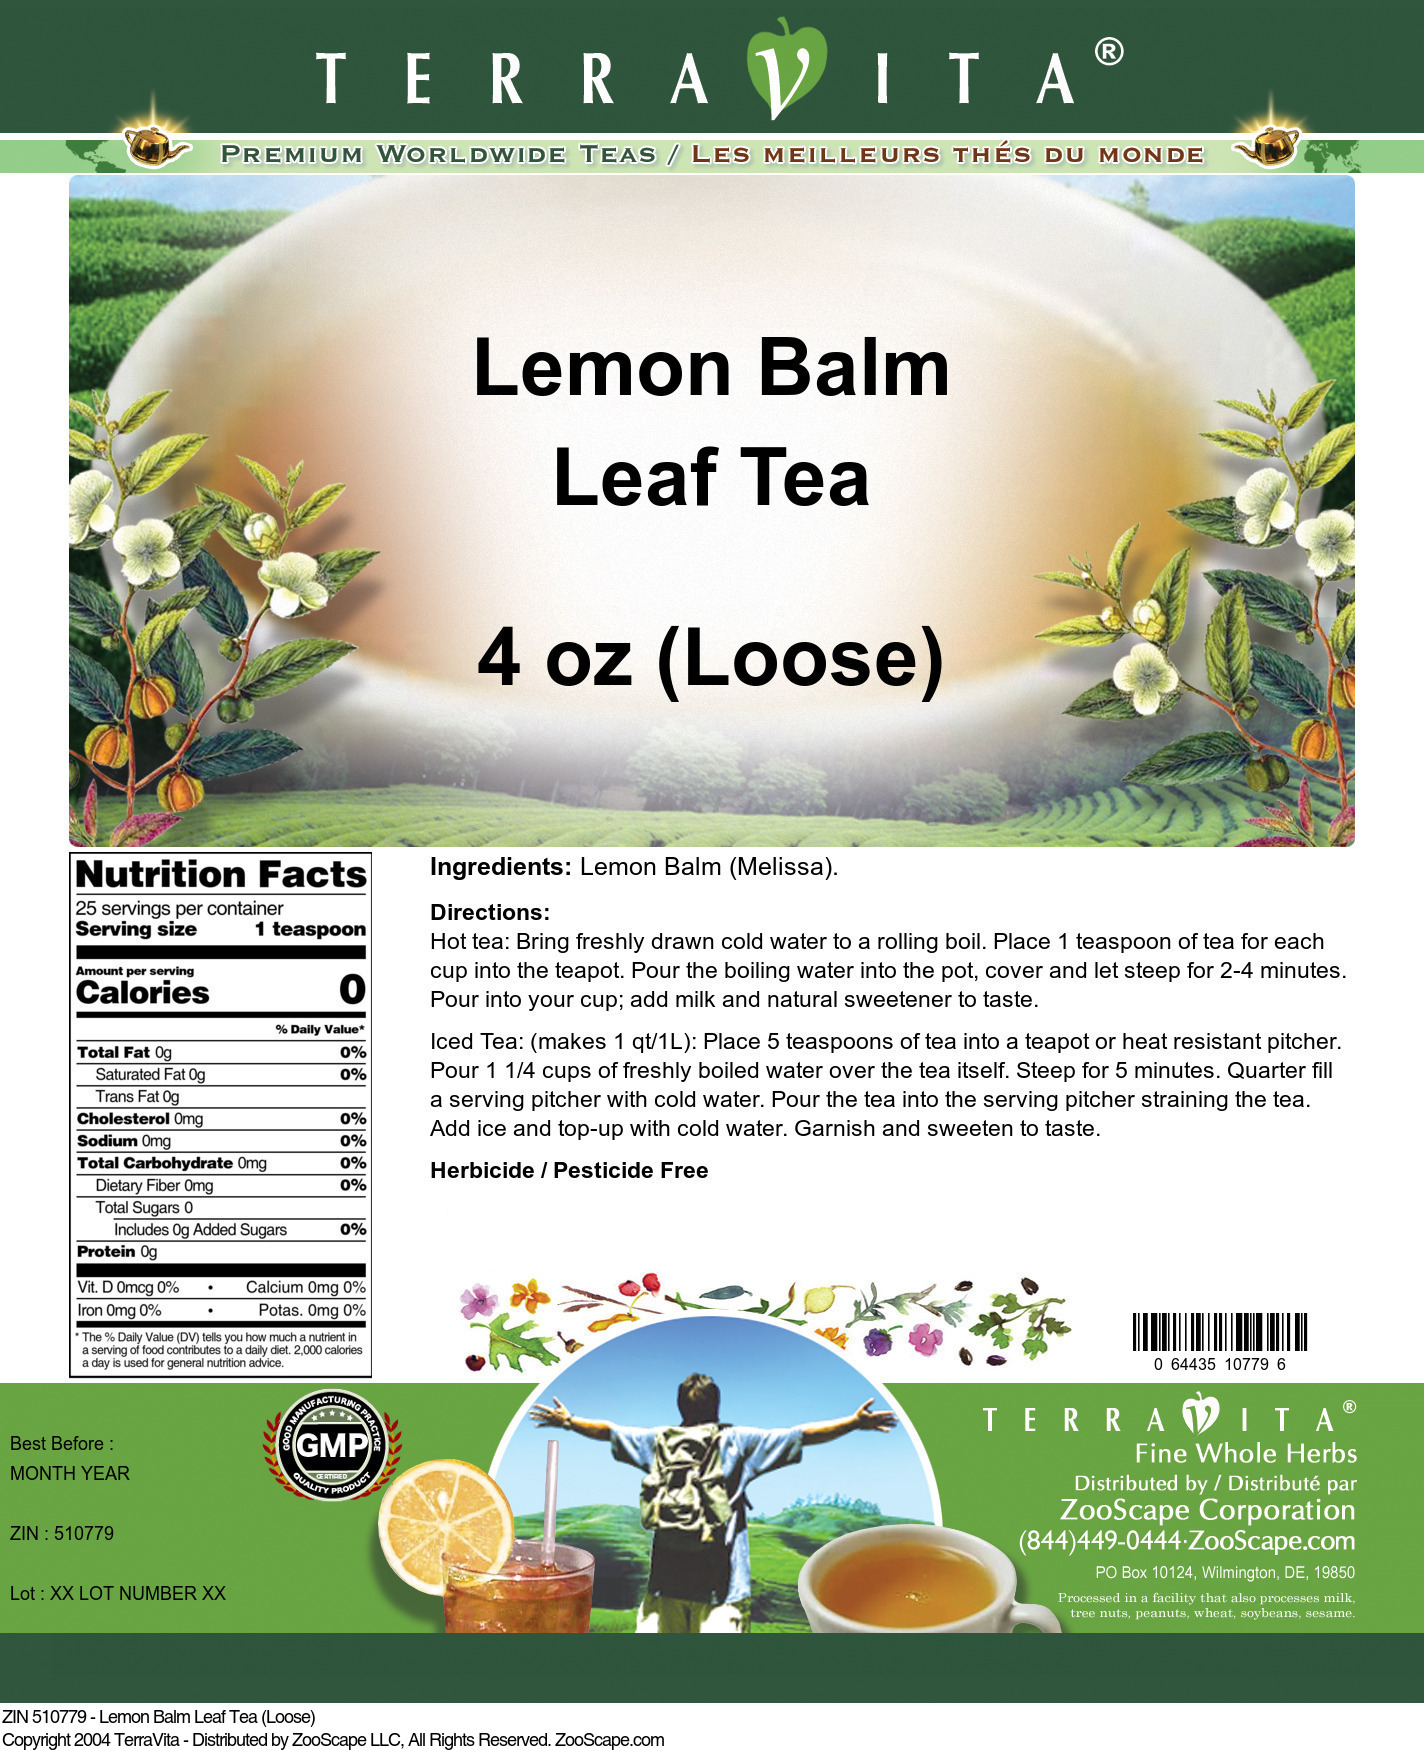 Lemon Balm Leaf Tea (Loose) - Label